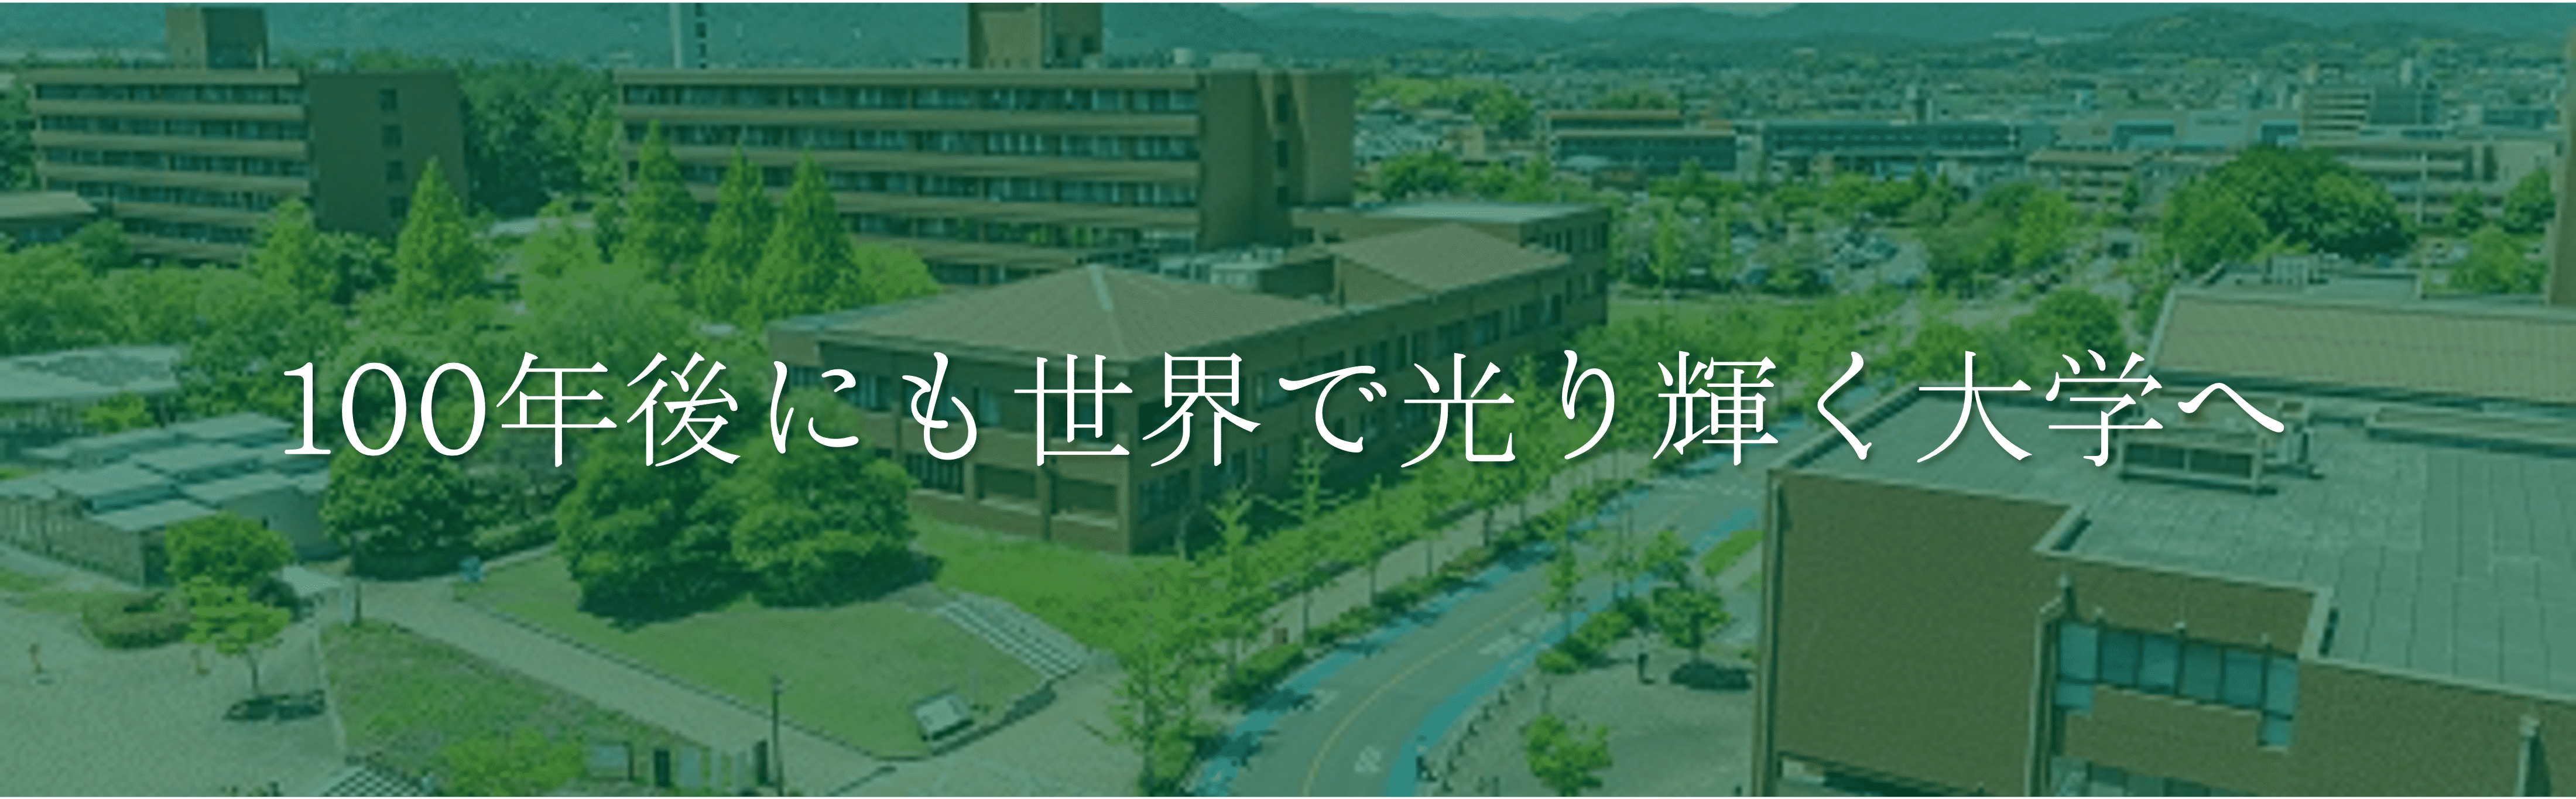 広島大学 モットー